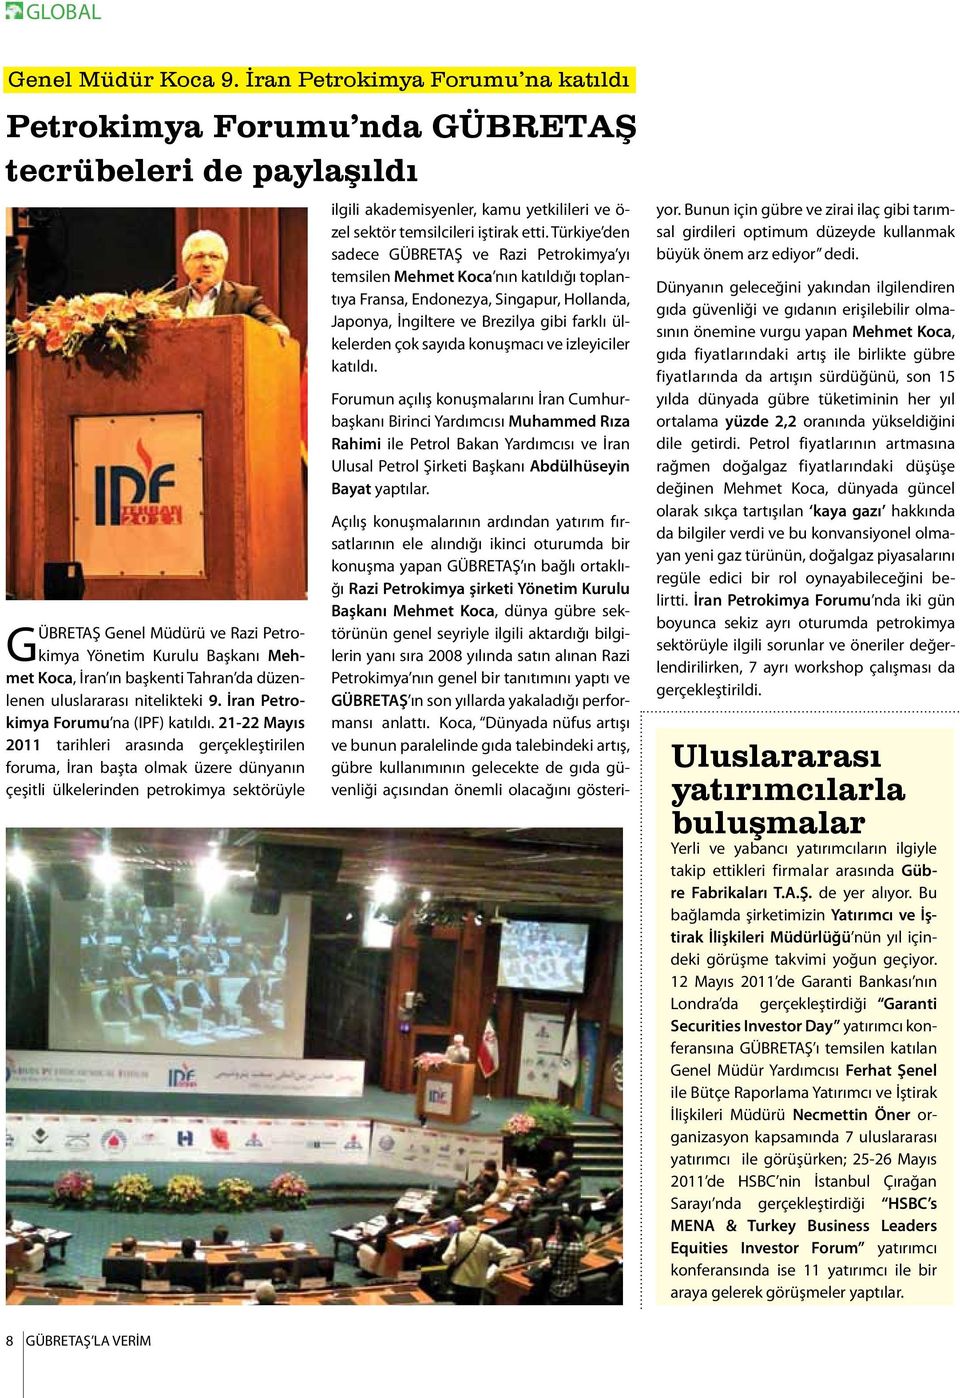 düzenlenen uluslararası nitelikteki 9. İran Petrokimya Forumu na (IPF) katıldı.